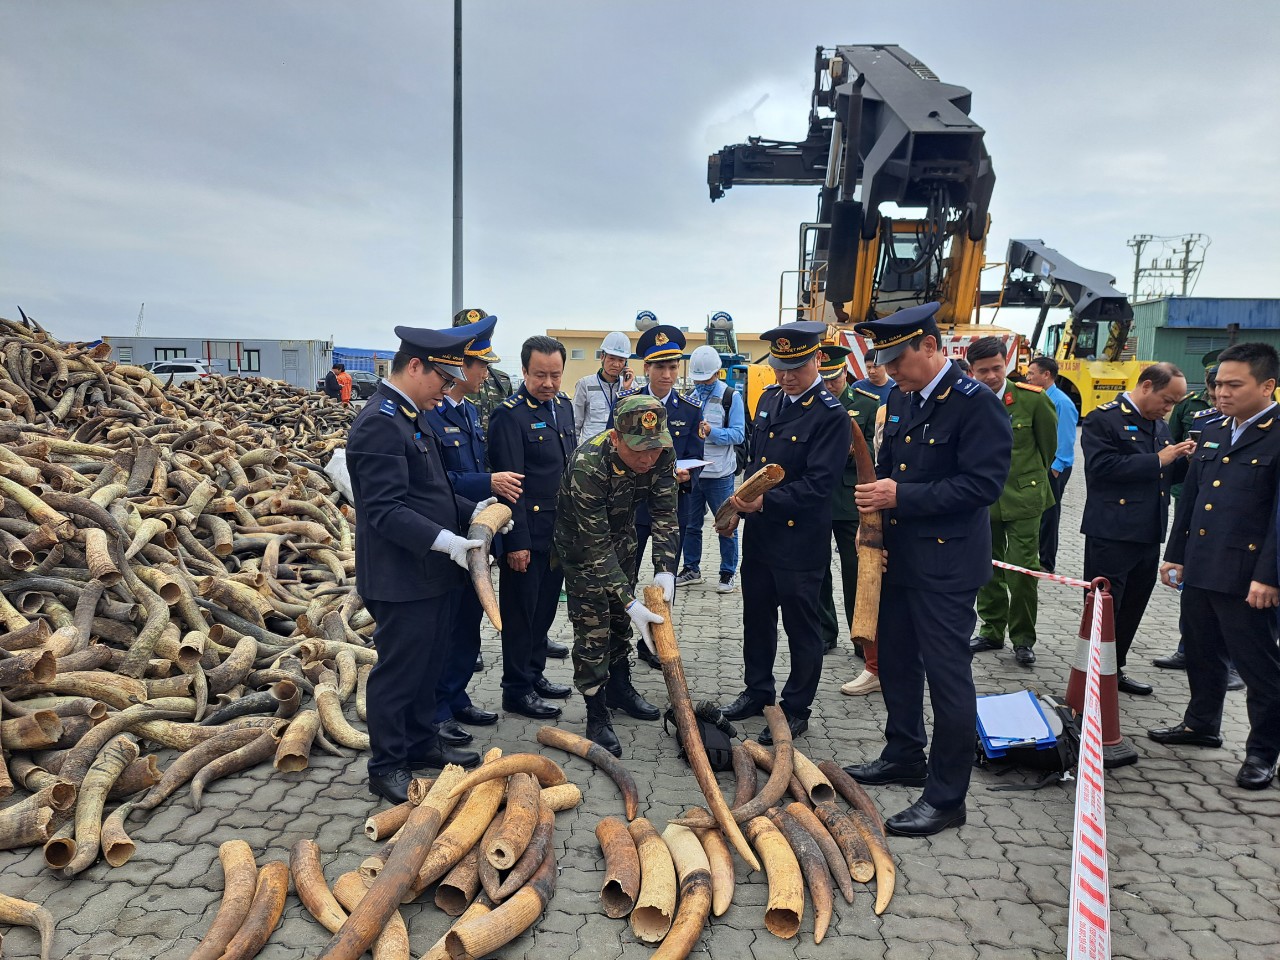 qua 2 vụ bắt giữ trong những ngày đầu xuân, Cục Hải quan Hải Phòng đã thu giữ hơn 600 kg ngà voi châu Phi.